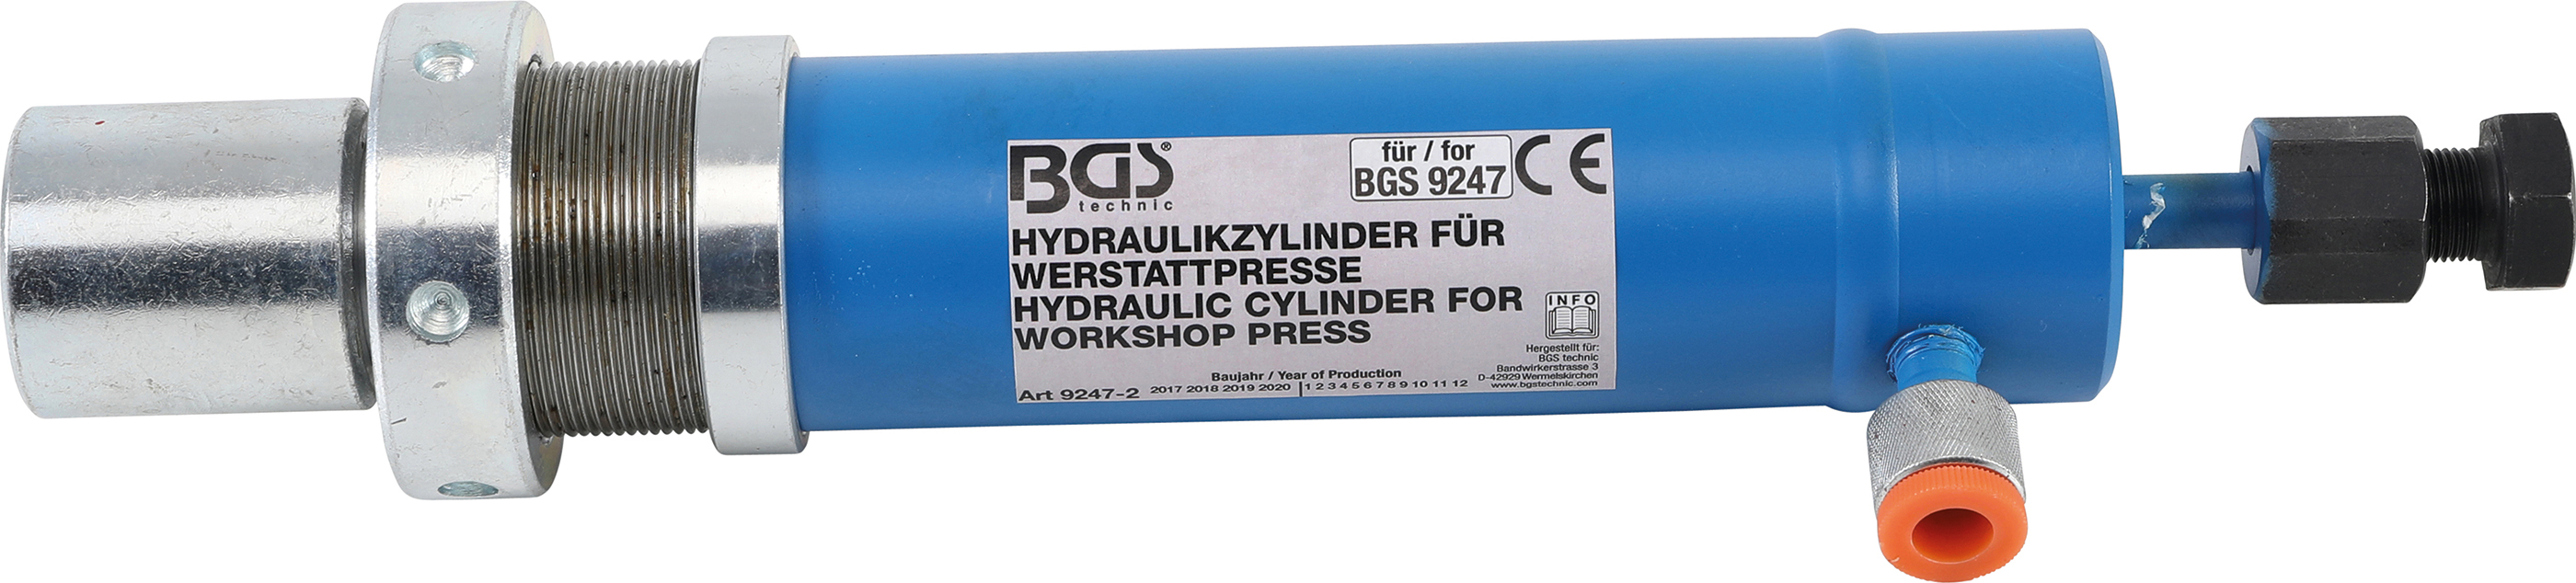 BGS 9247-2 Cilindru hidraulic pentru presa de rulmenti BGS 9247